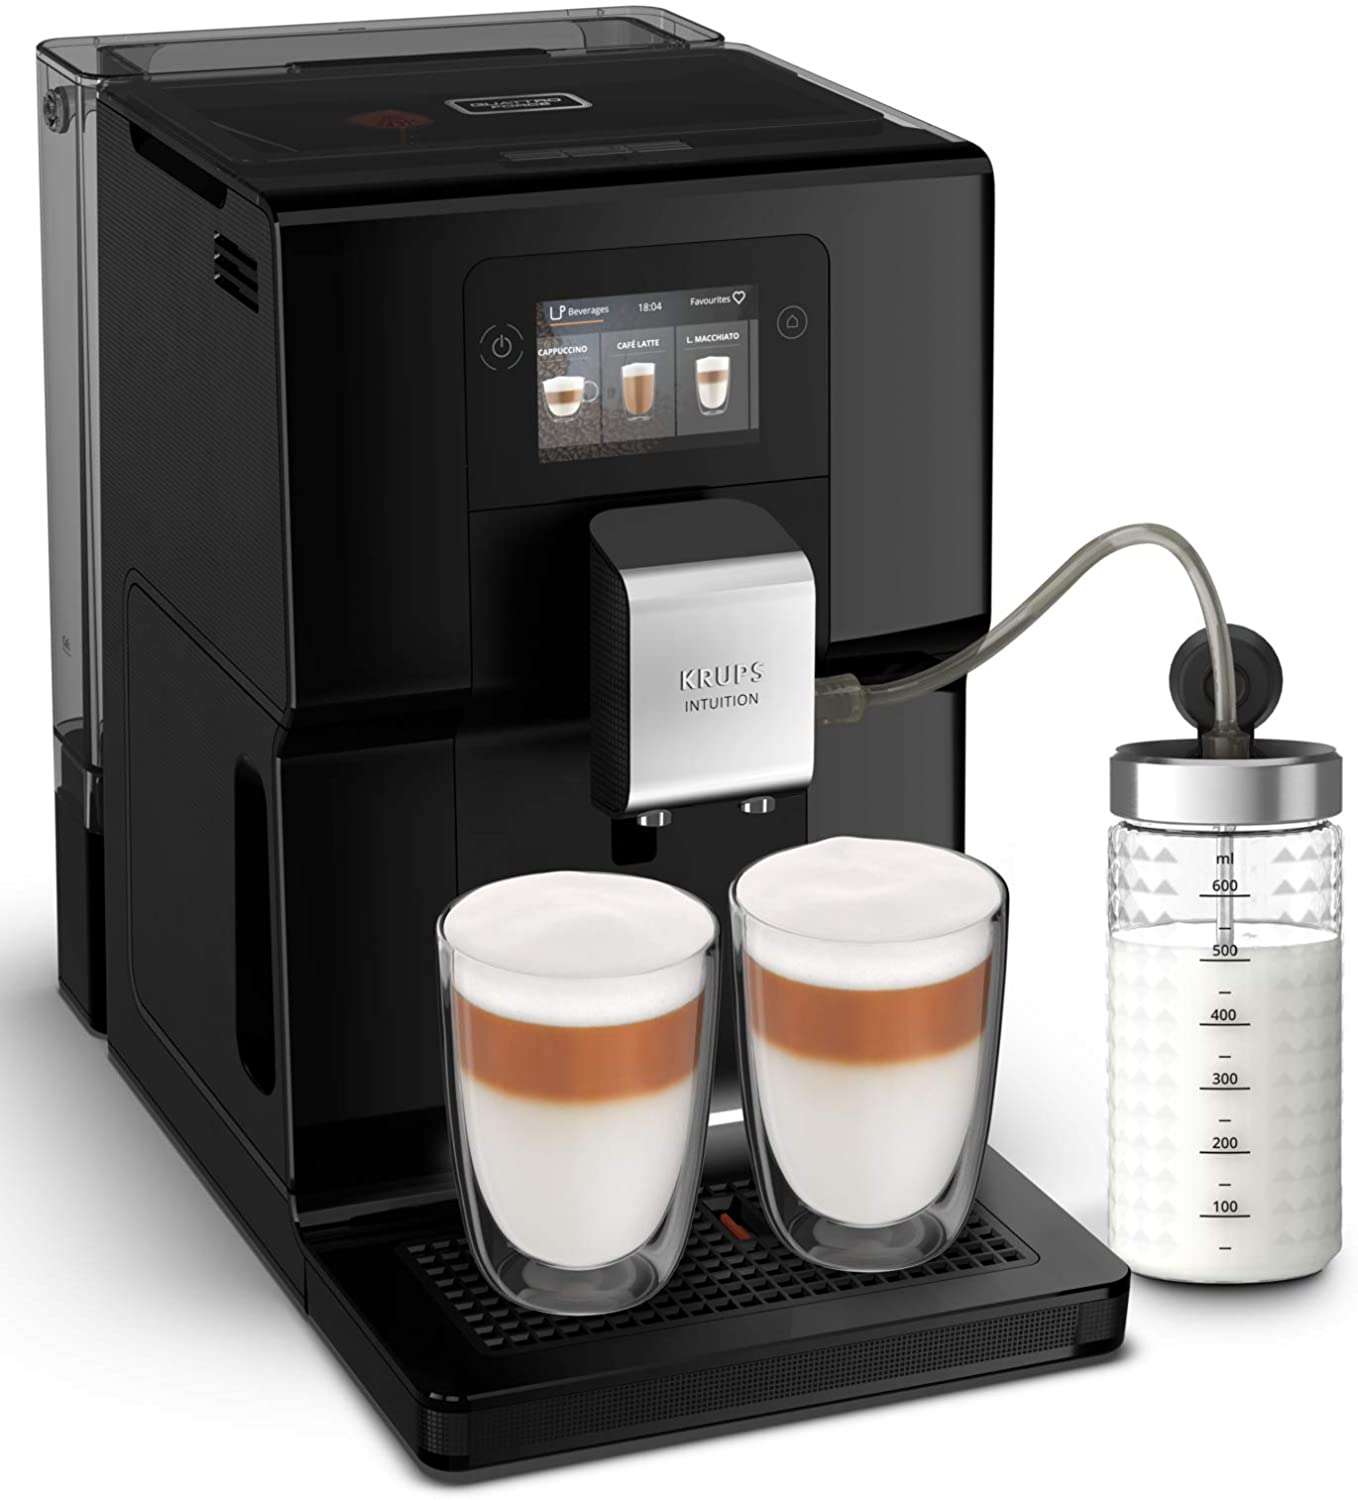 Soldes d'été : la machine à café Krups Intuition Preference © Amazon